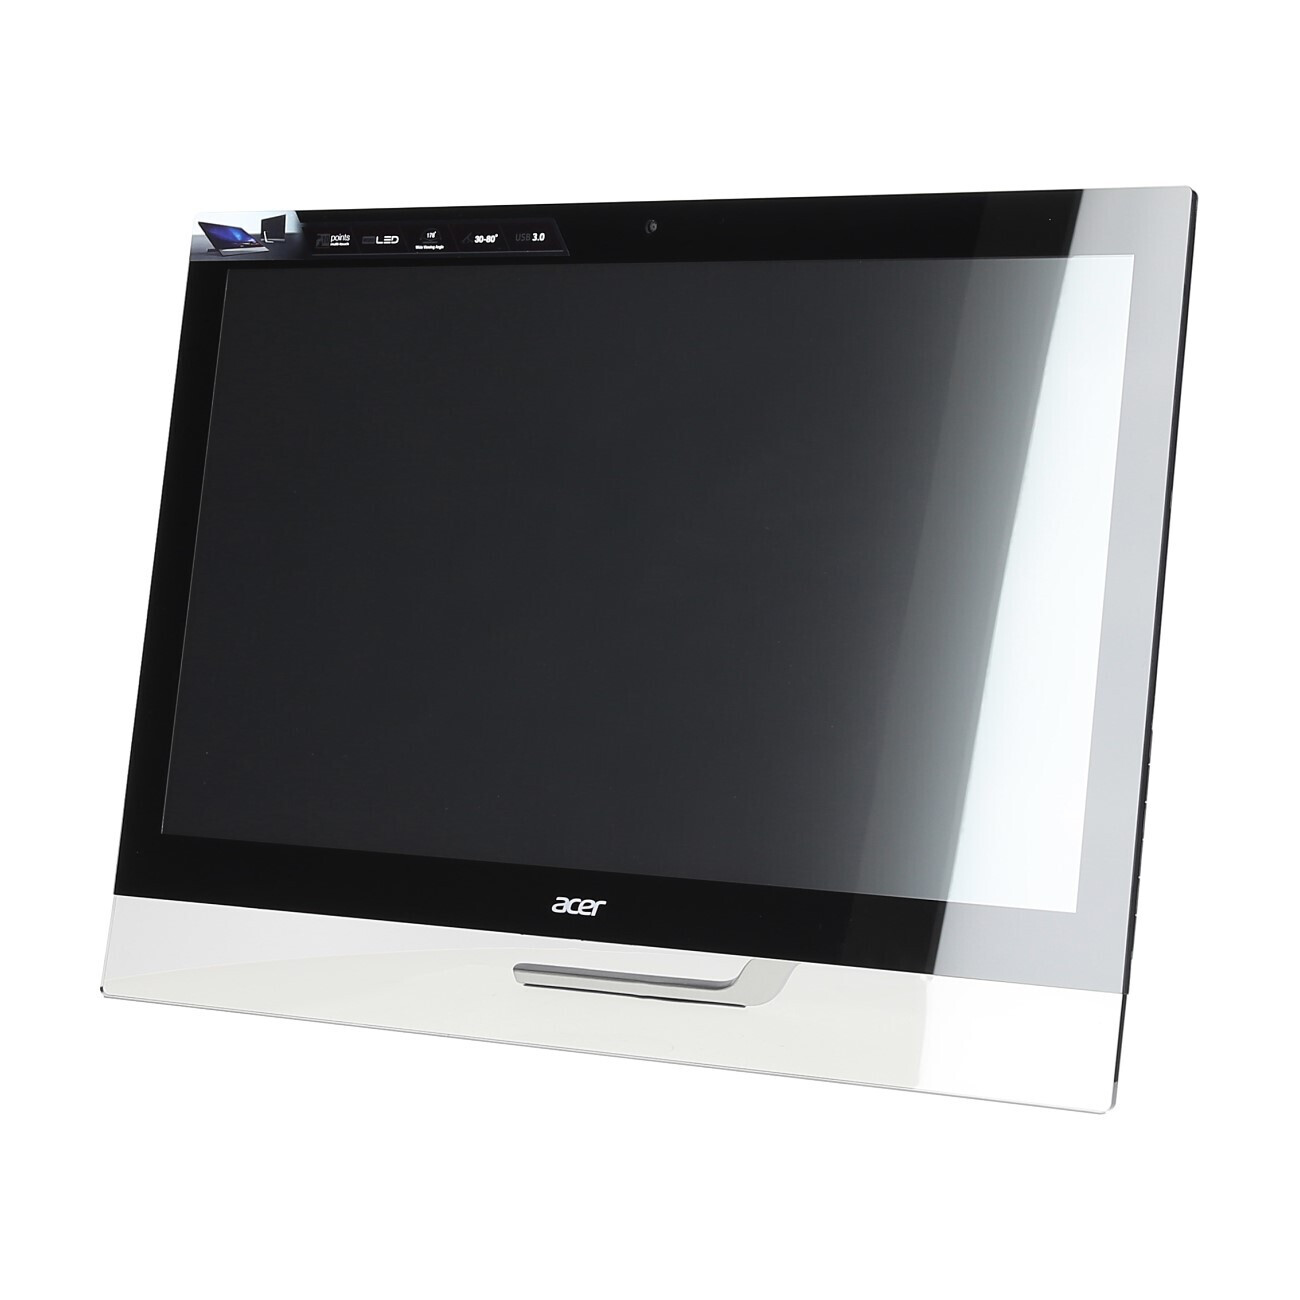 Vorschau: Acer T272HUL - Touch Monitor - Demoware